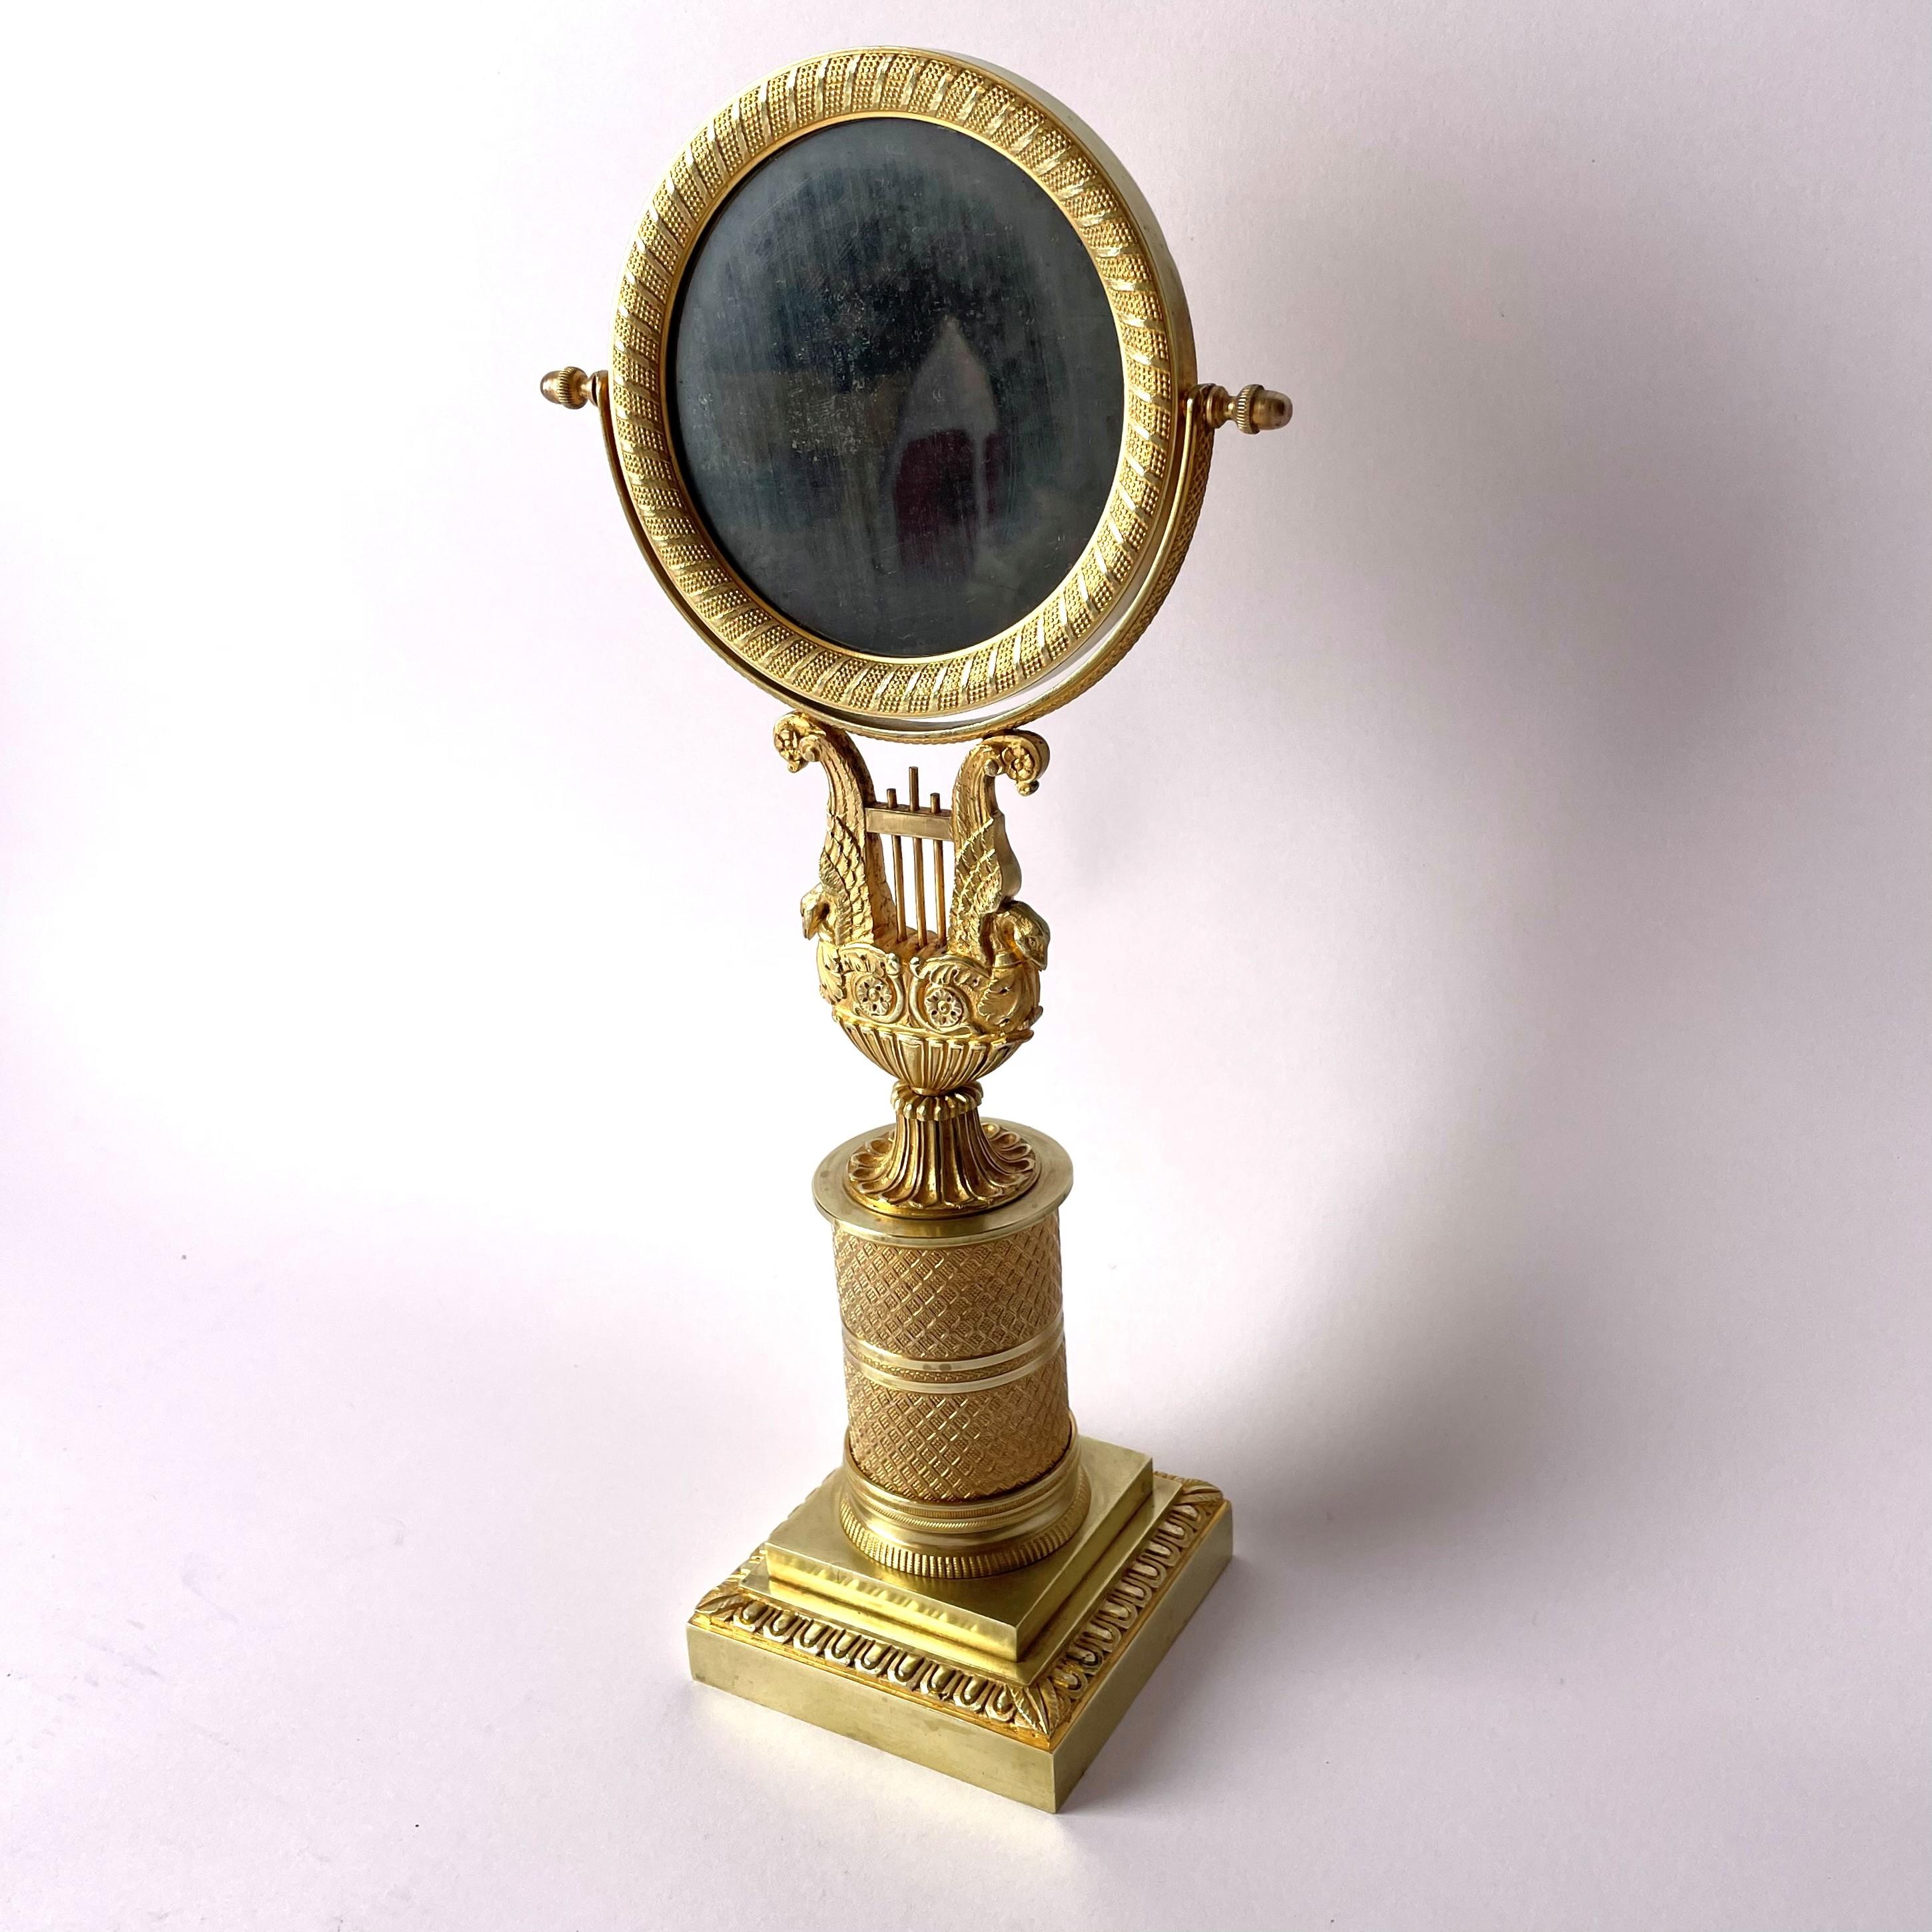 Eleganter und seltener Empire-Tischspiegel aus vergoldeter Bronze. Sehr gute Qualität. Hergestellt in Frankreich um 1820, mit originalem Spiegelglas mit Patina.

Alters- und gebrauchsbedingte Abnutzungserscheinungen.